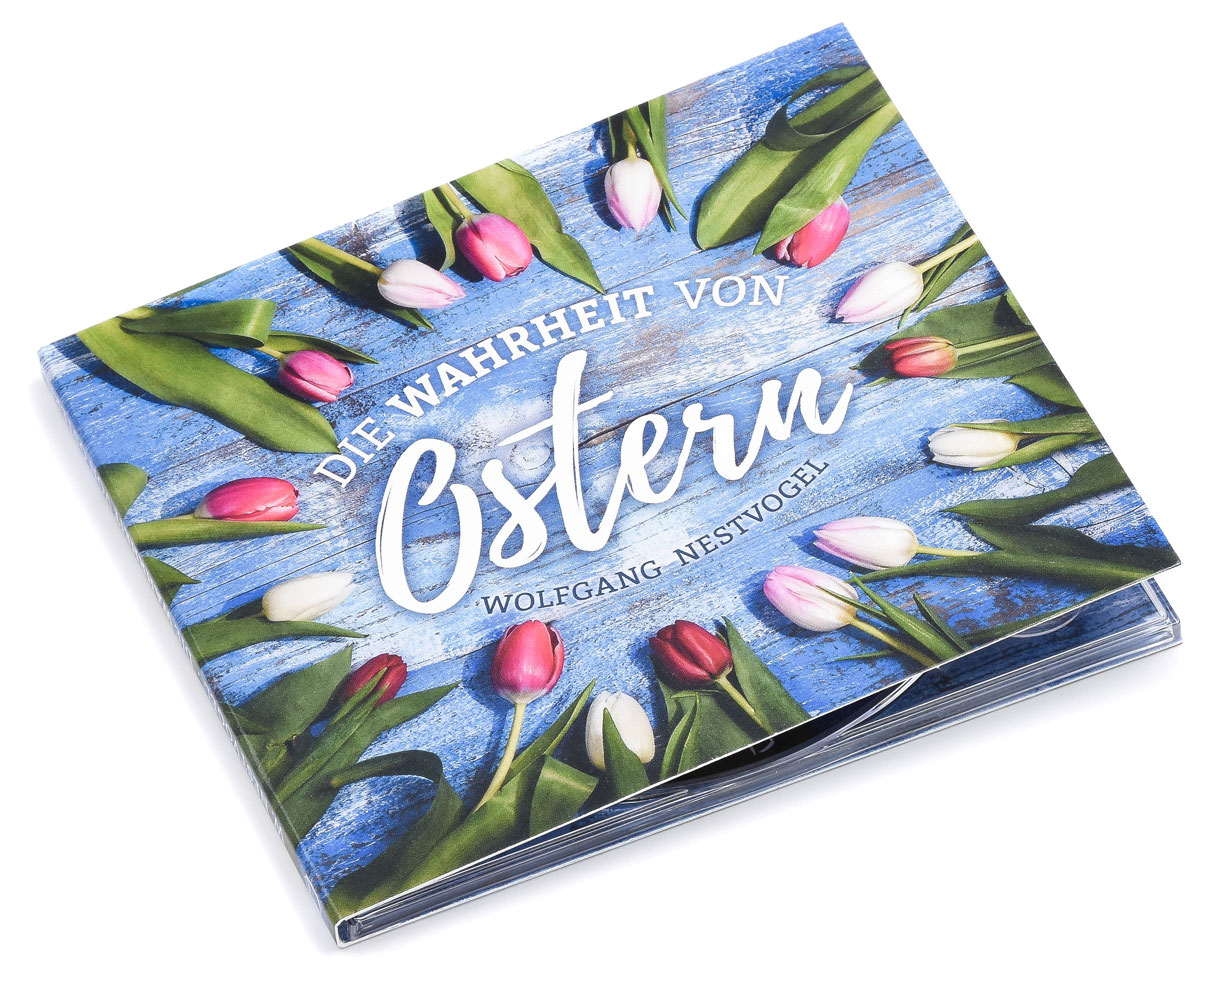 Die Wahrheit von Ostern (Audio-CD)